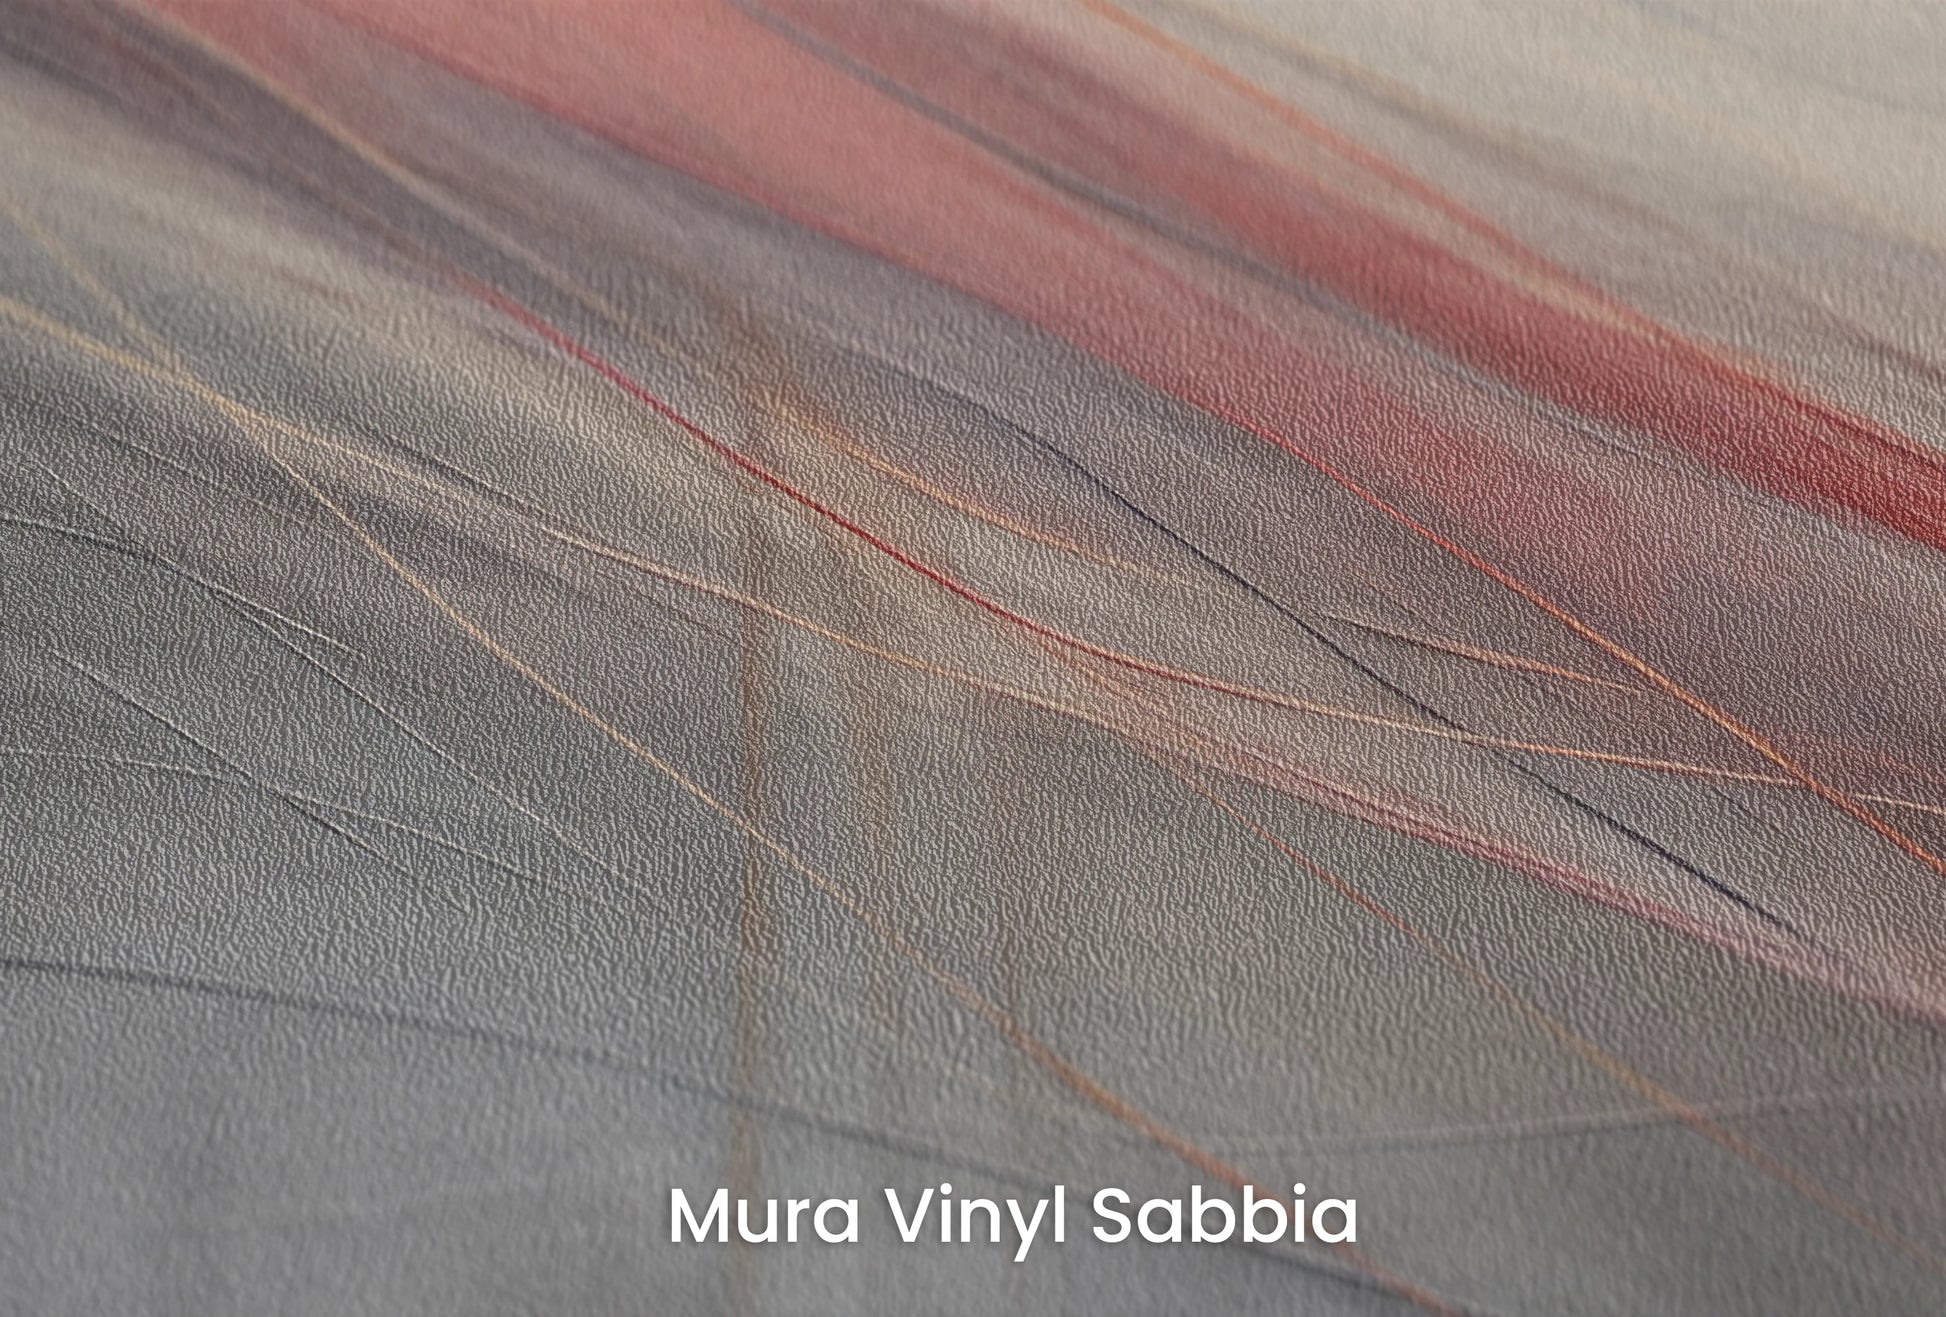 Zbliżenie na artystyczną fototapetę o nazwie Rustic Elegance na podłożu Mura Vinyl Sabbia struktura grubego ziarna piasku.